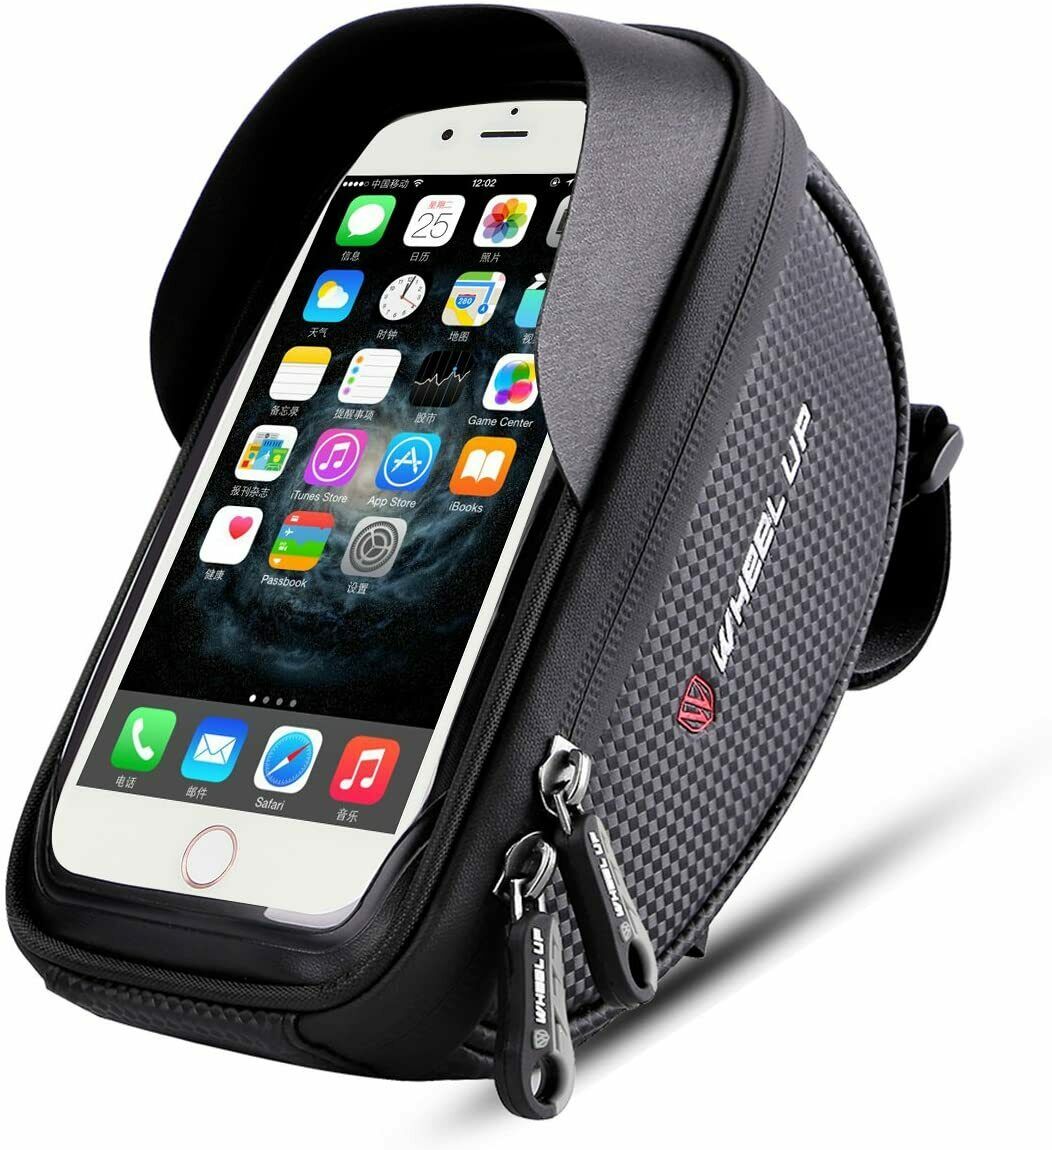 Waterproof Motorcycle Motorbike Mount Holder Phone Case Bag